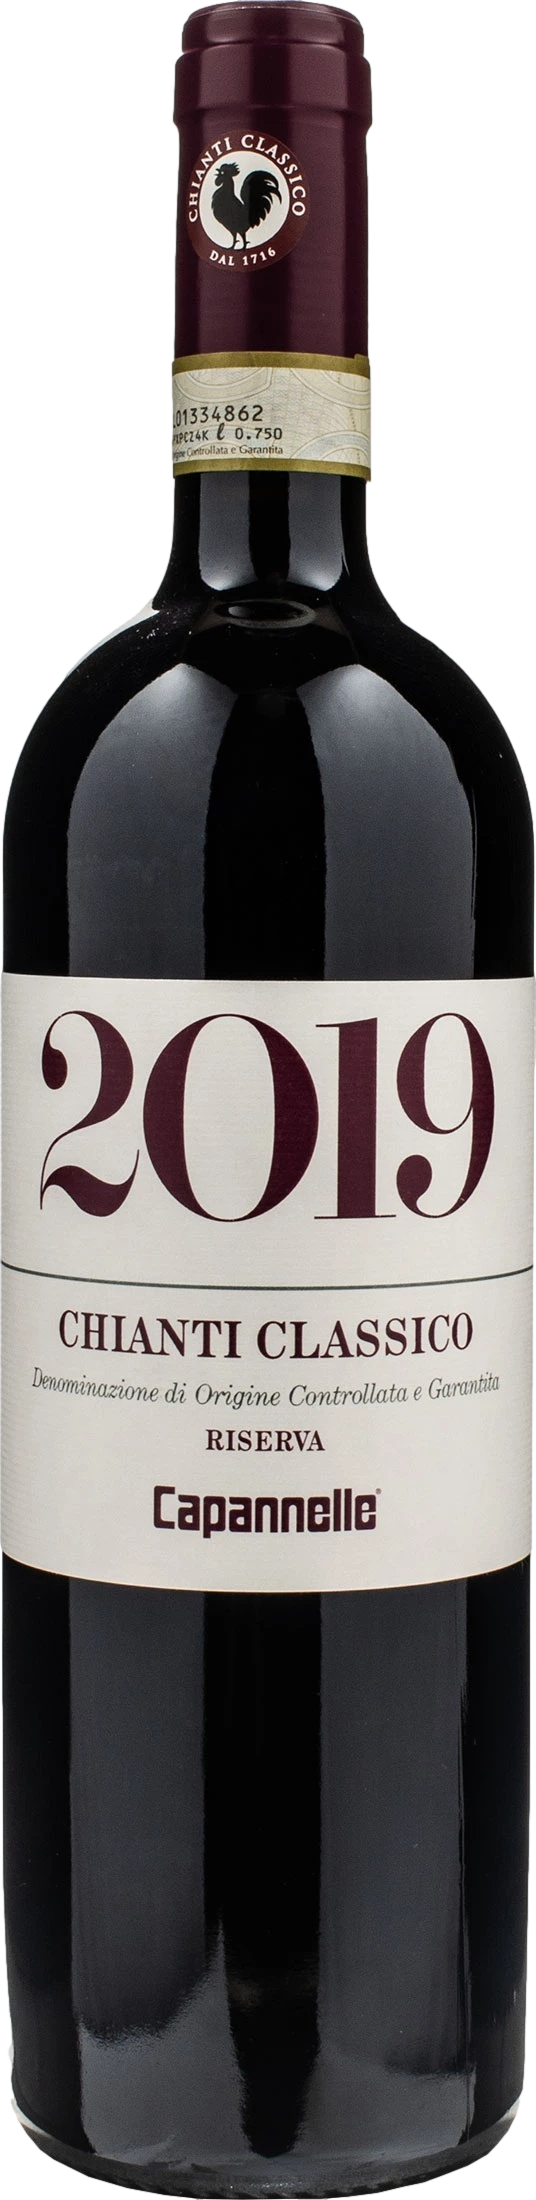 Capannelle Chianti Classico Riserva 2019